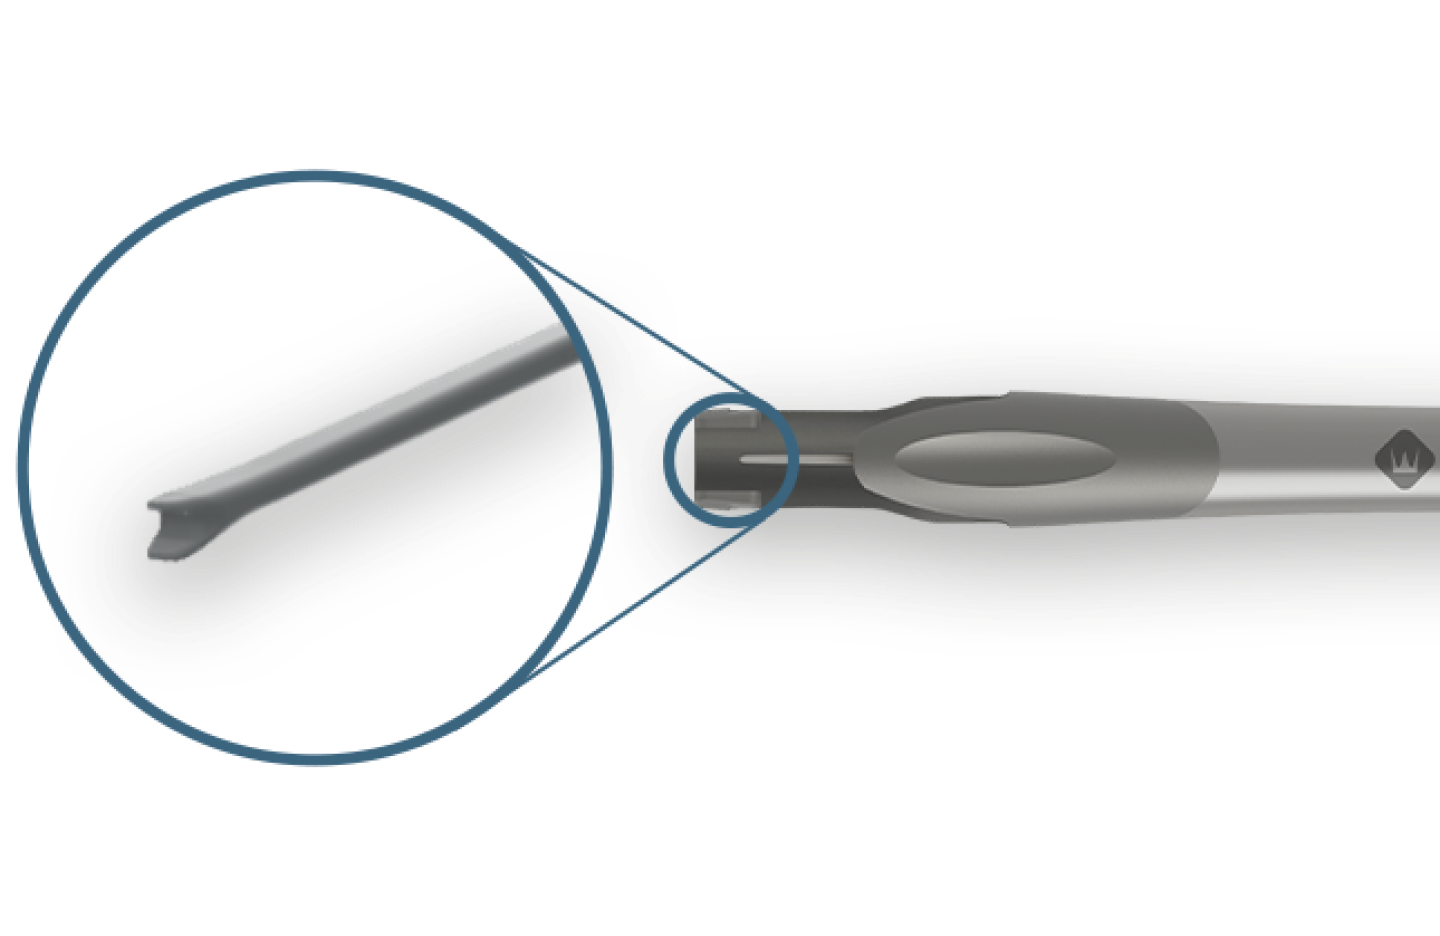 L’injecteur Clareon Monarch IV est placé à l'horizontale. Un cercle bleu est placé sur l'appareil pour attirer l'attention sur l'extrémité du piston.